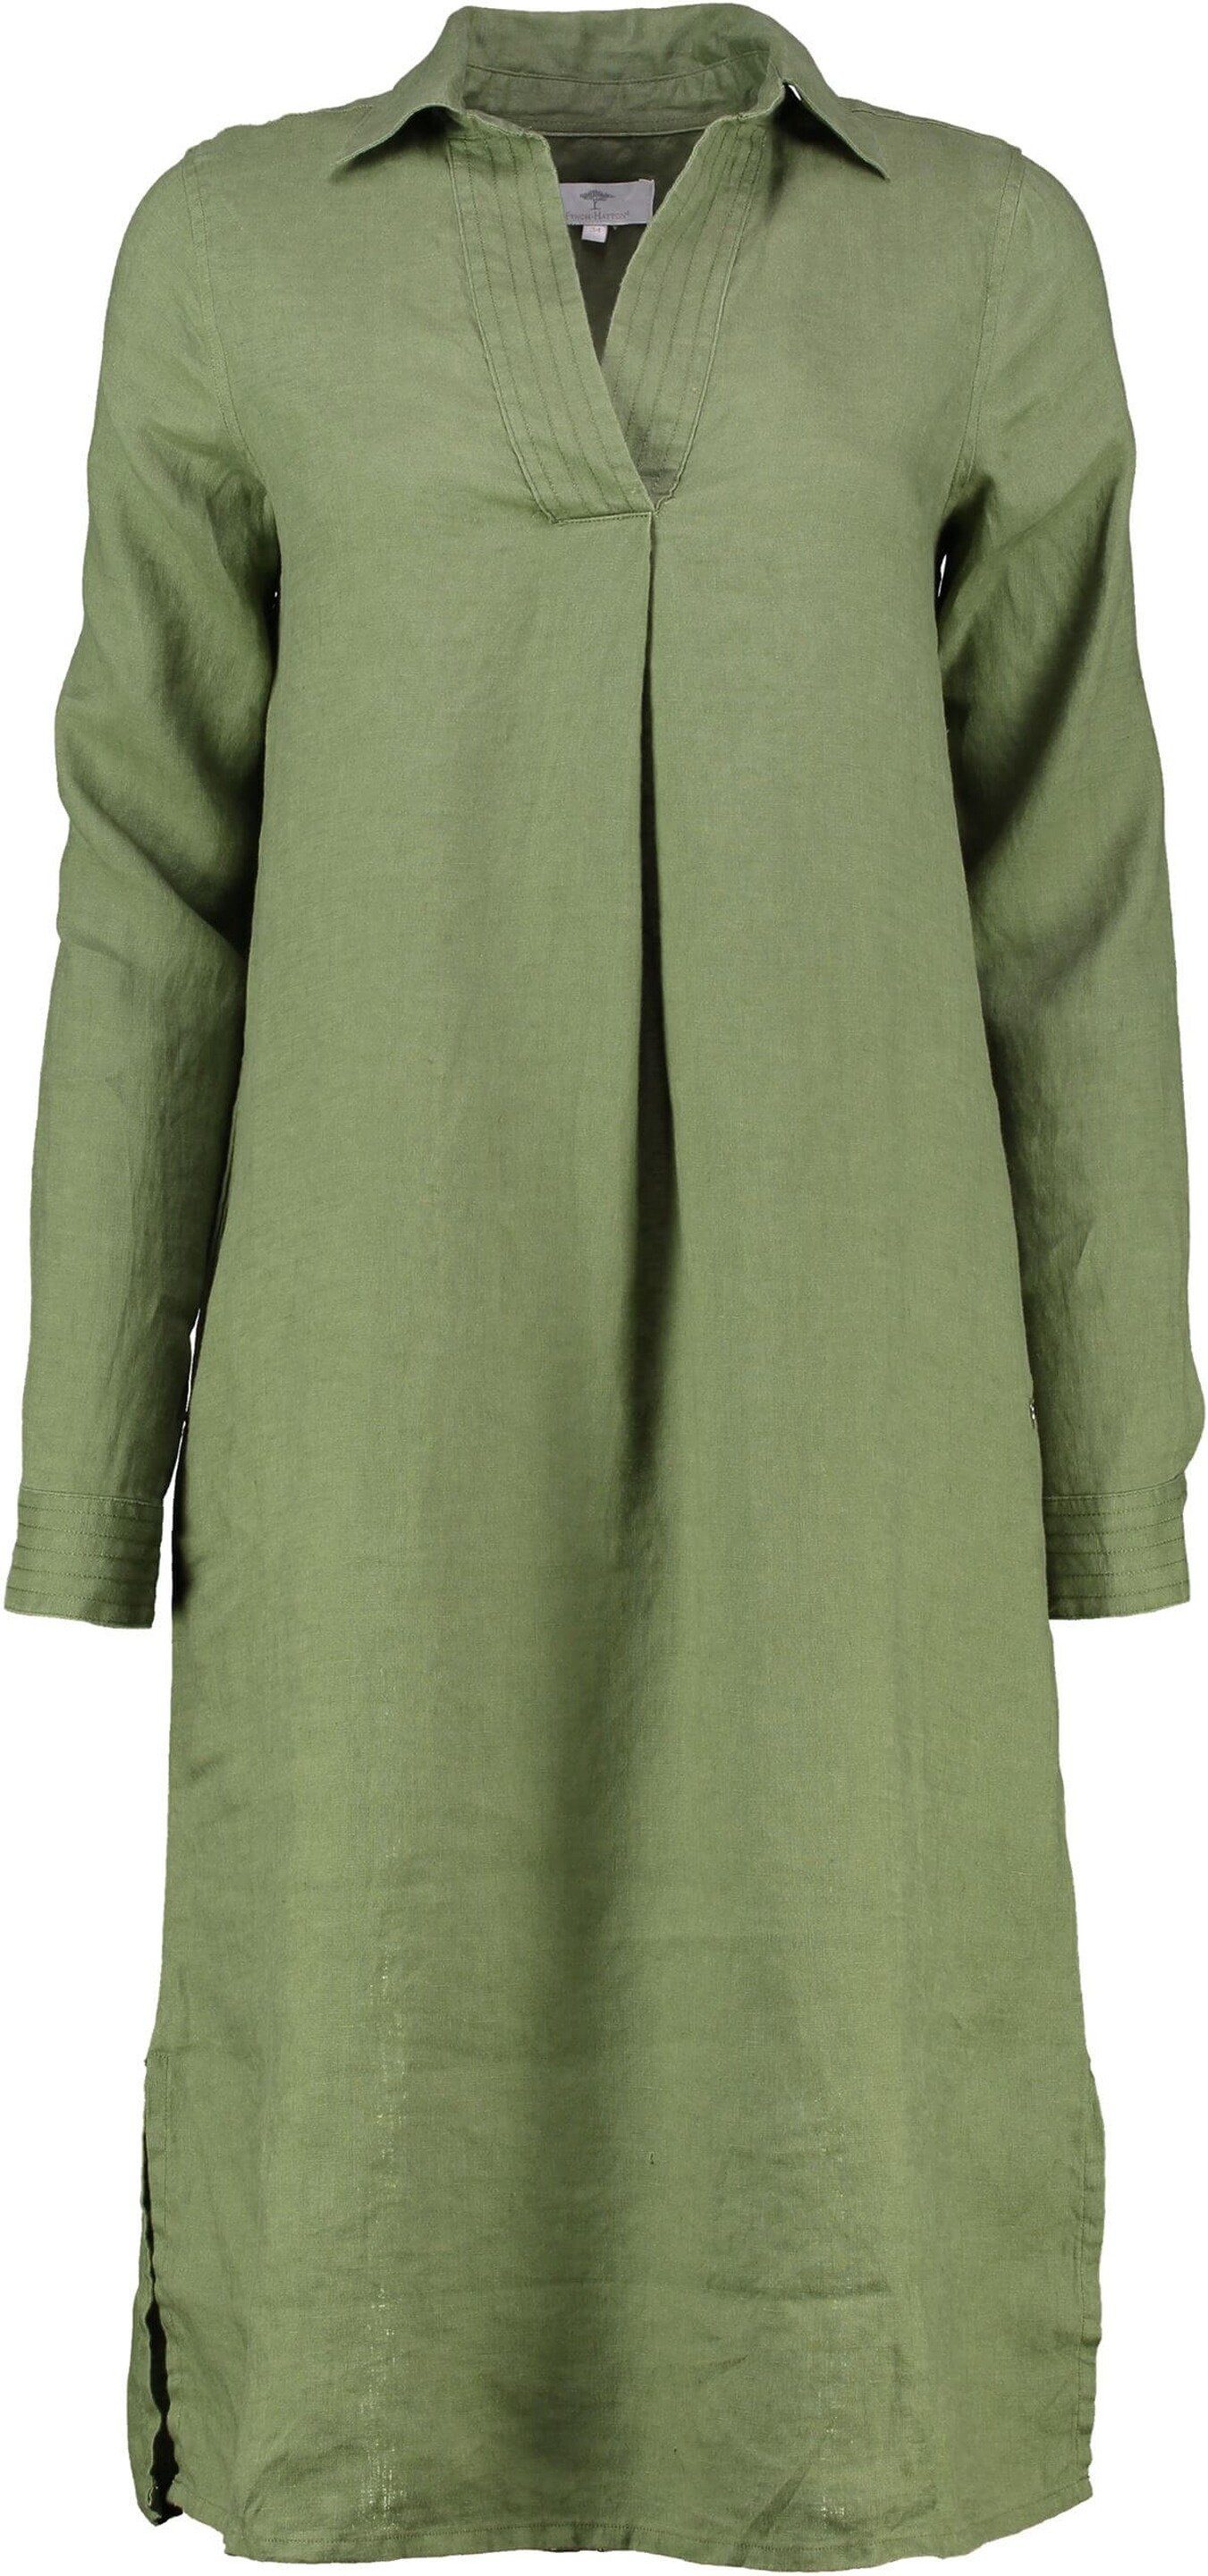 FYNCH-HATTON Midikleid FYNCH HATTON Leinen-Kleid oliv langarm in edler Natur-Qualität